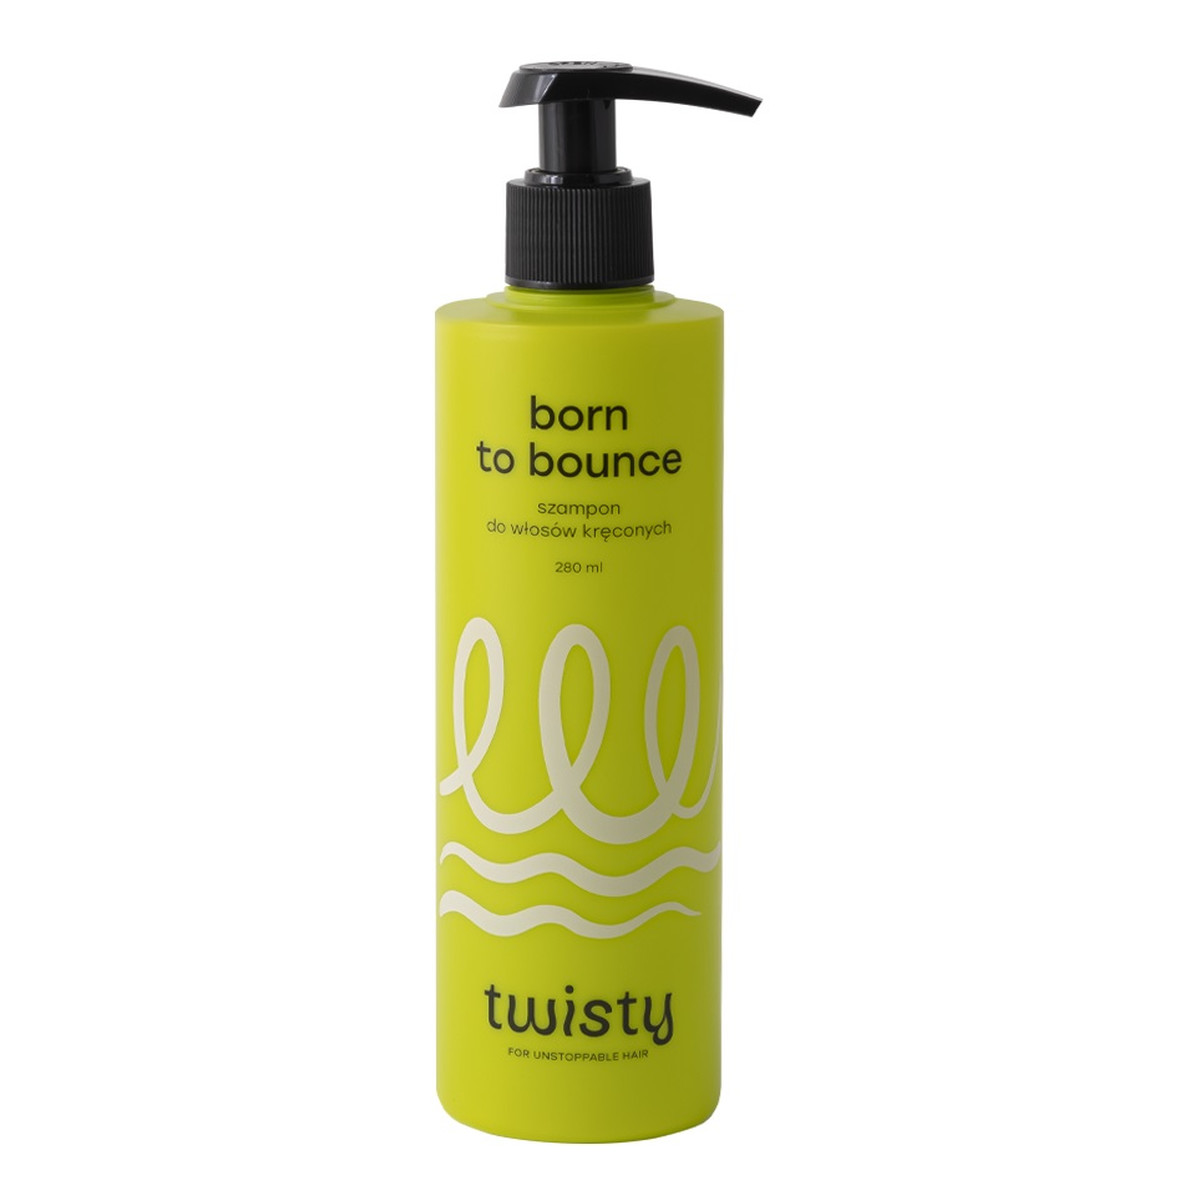 Twisty Born to bounce szampon do włosów kręconych 280ml